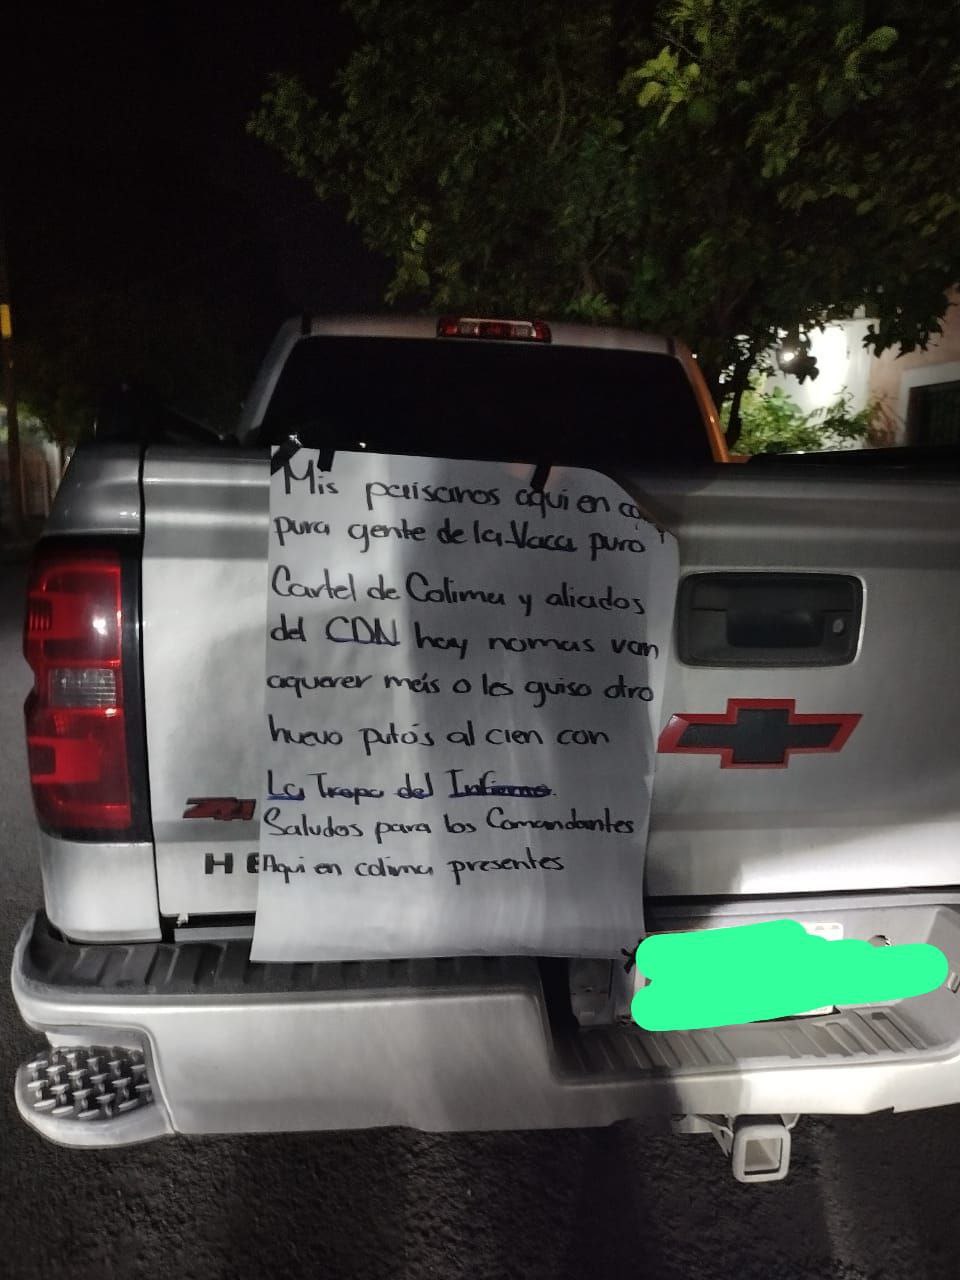 Otro de los mensajes se encontraba sobre una camioneta blanca
(Foto: Twitter/@OscarAdrianL)